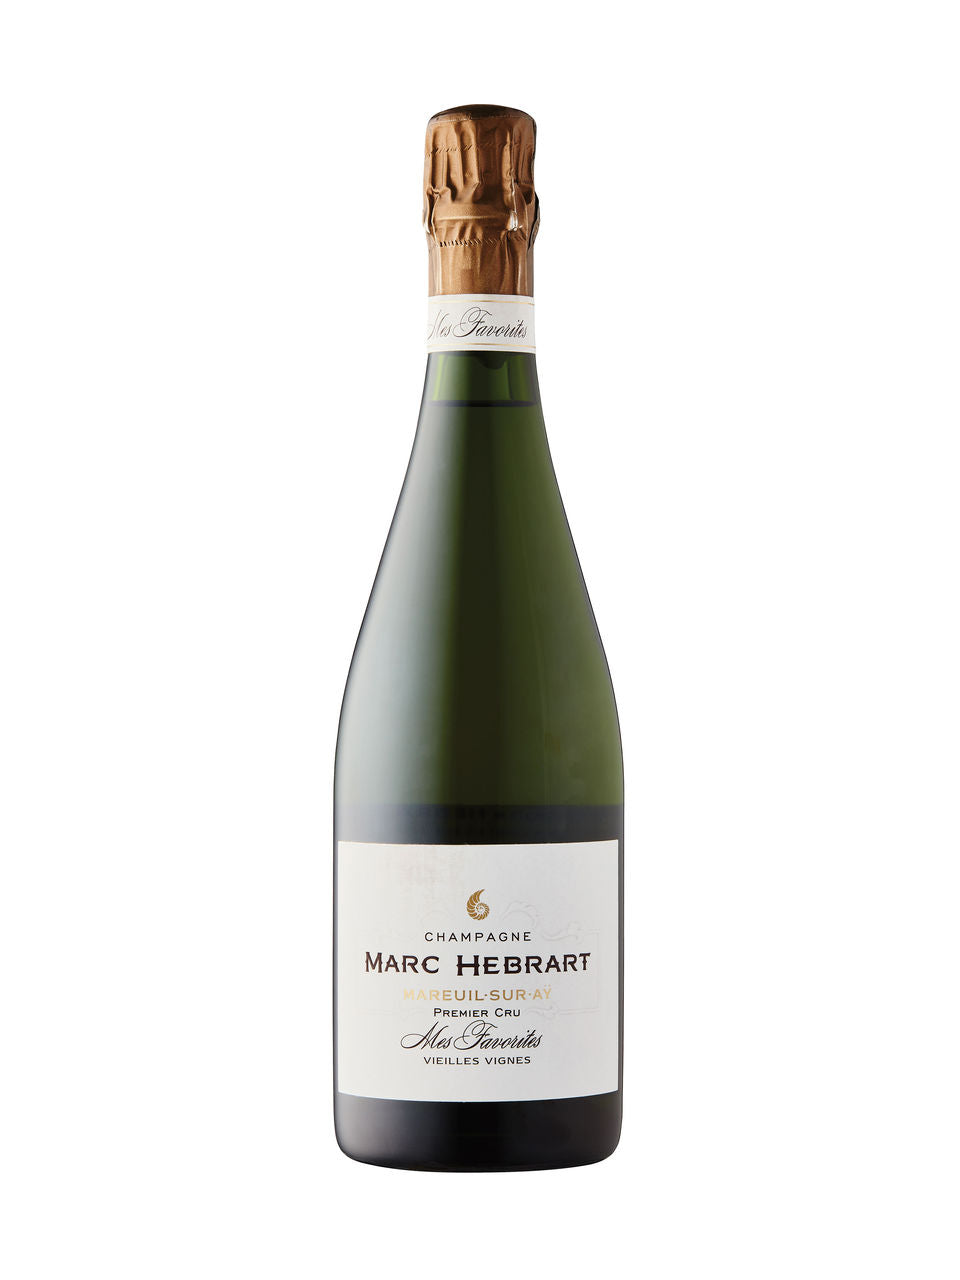 Marc Hebrart Mes Favorites Vieilles Vignes Brut Champagne 1er Cru 750 ml bottle VINTAGES